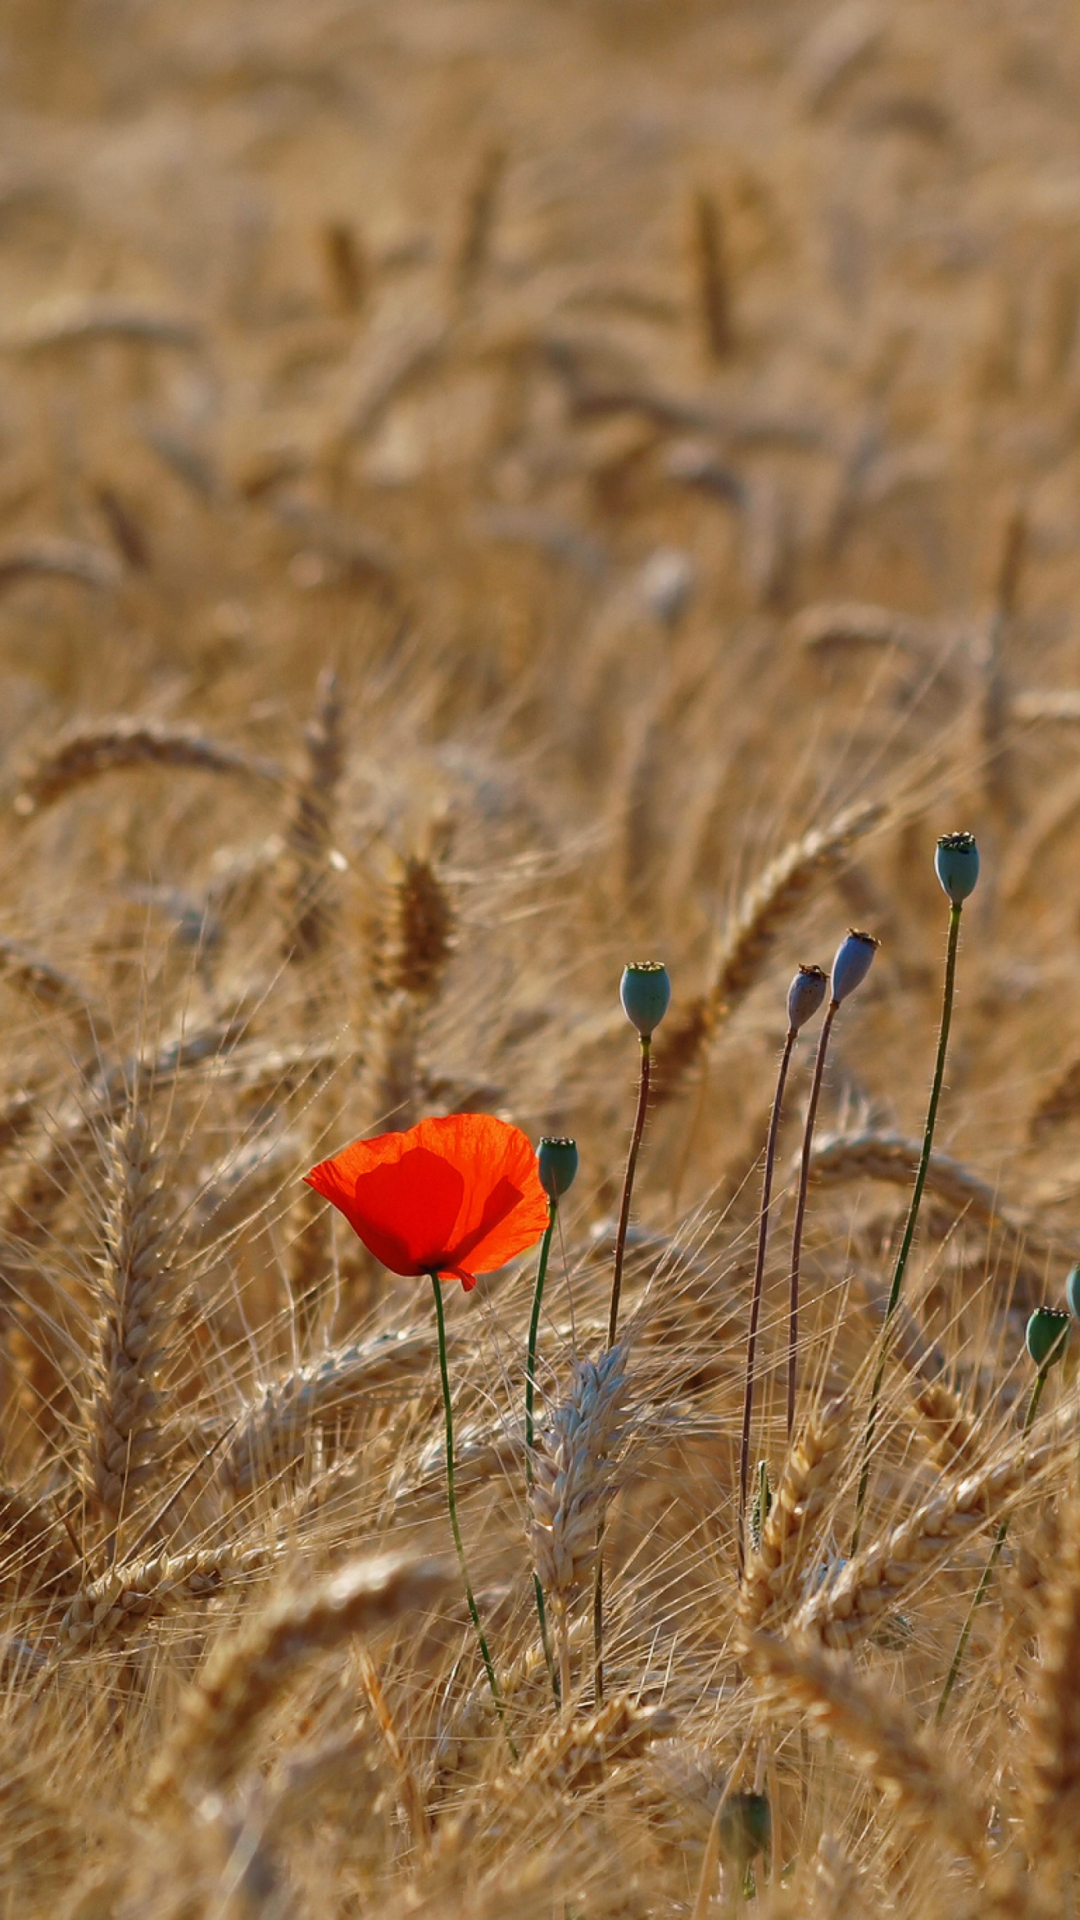 Red Poppy In Wheat Field wallpaper 1080x1920